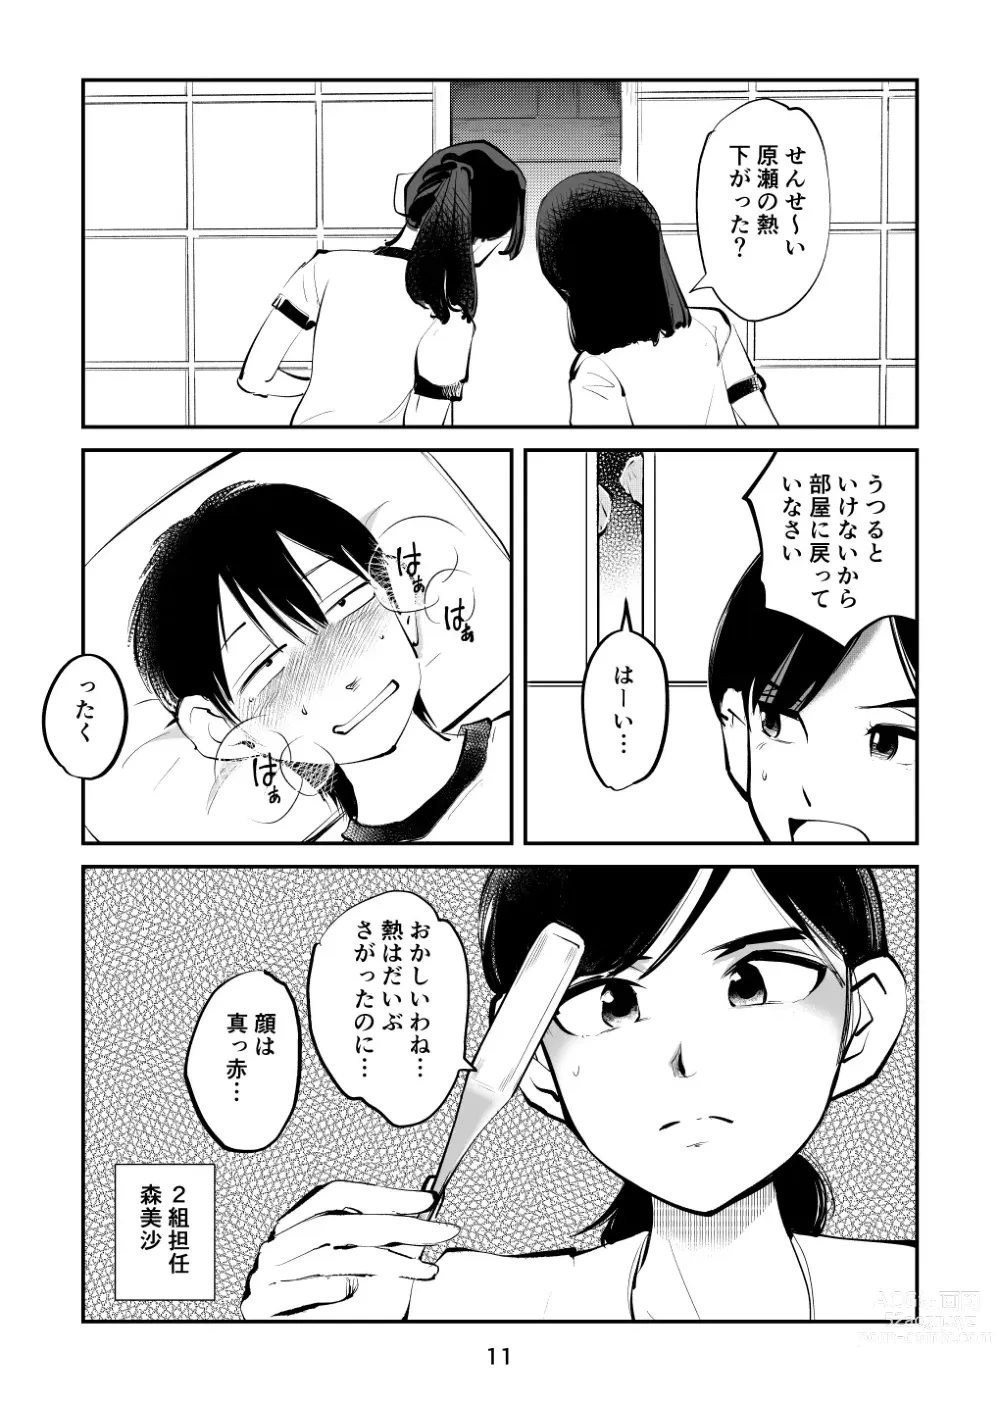 Page 11 of doujinshi Chinpo Shiikukakari 7